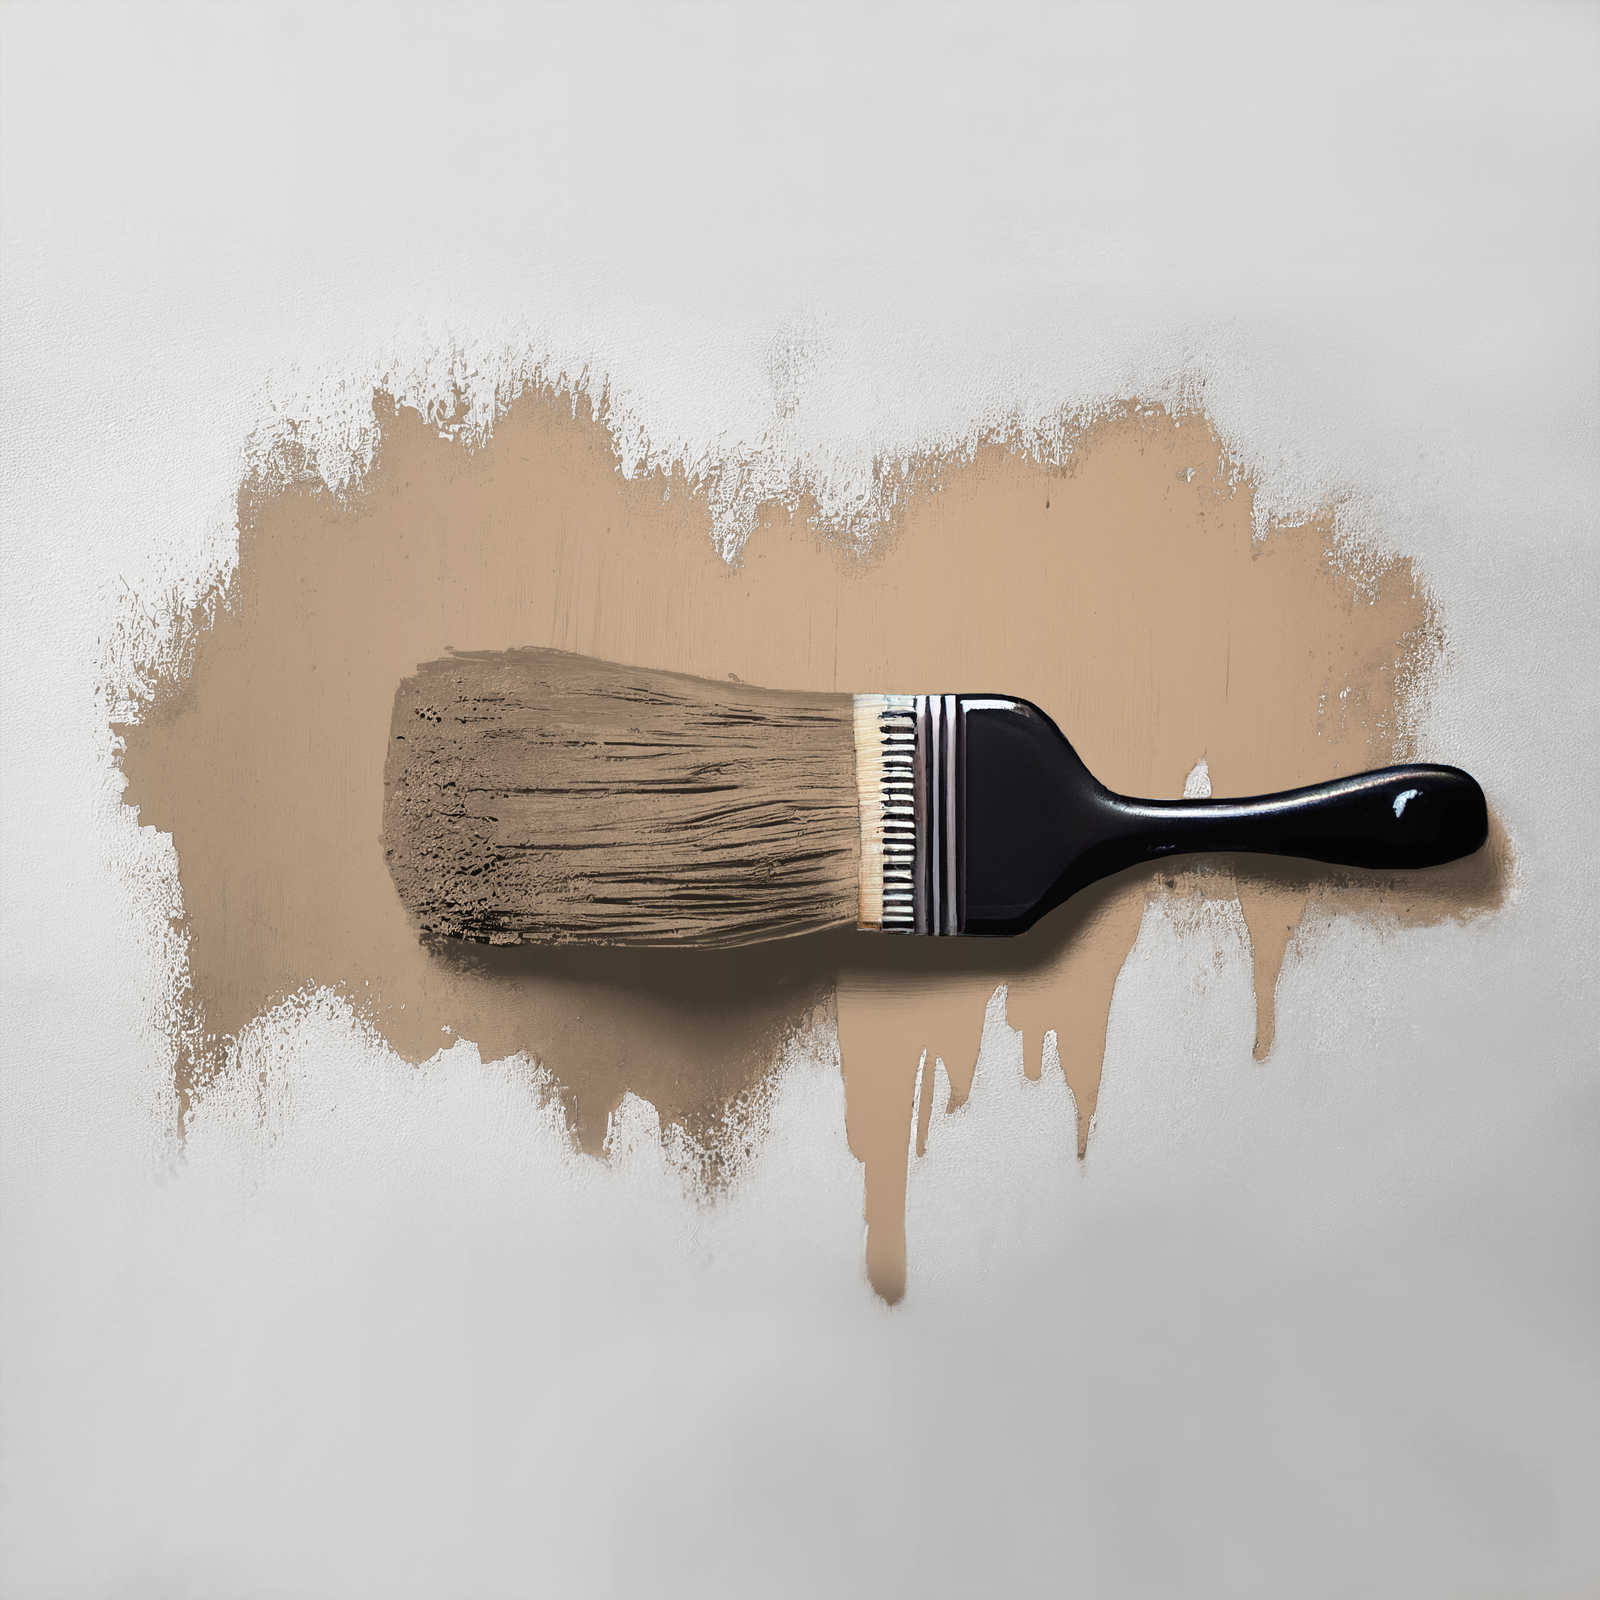             Wall Paint TCK6011 »Whispy Walnut« in intensive beige – 5.0 litre
        